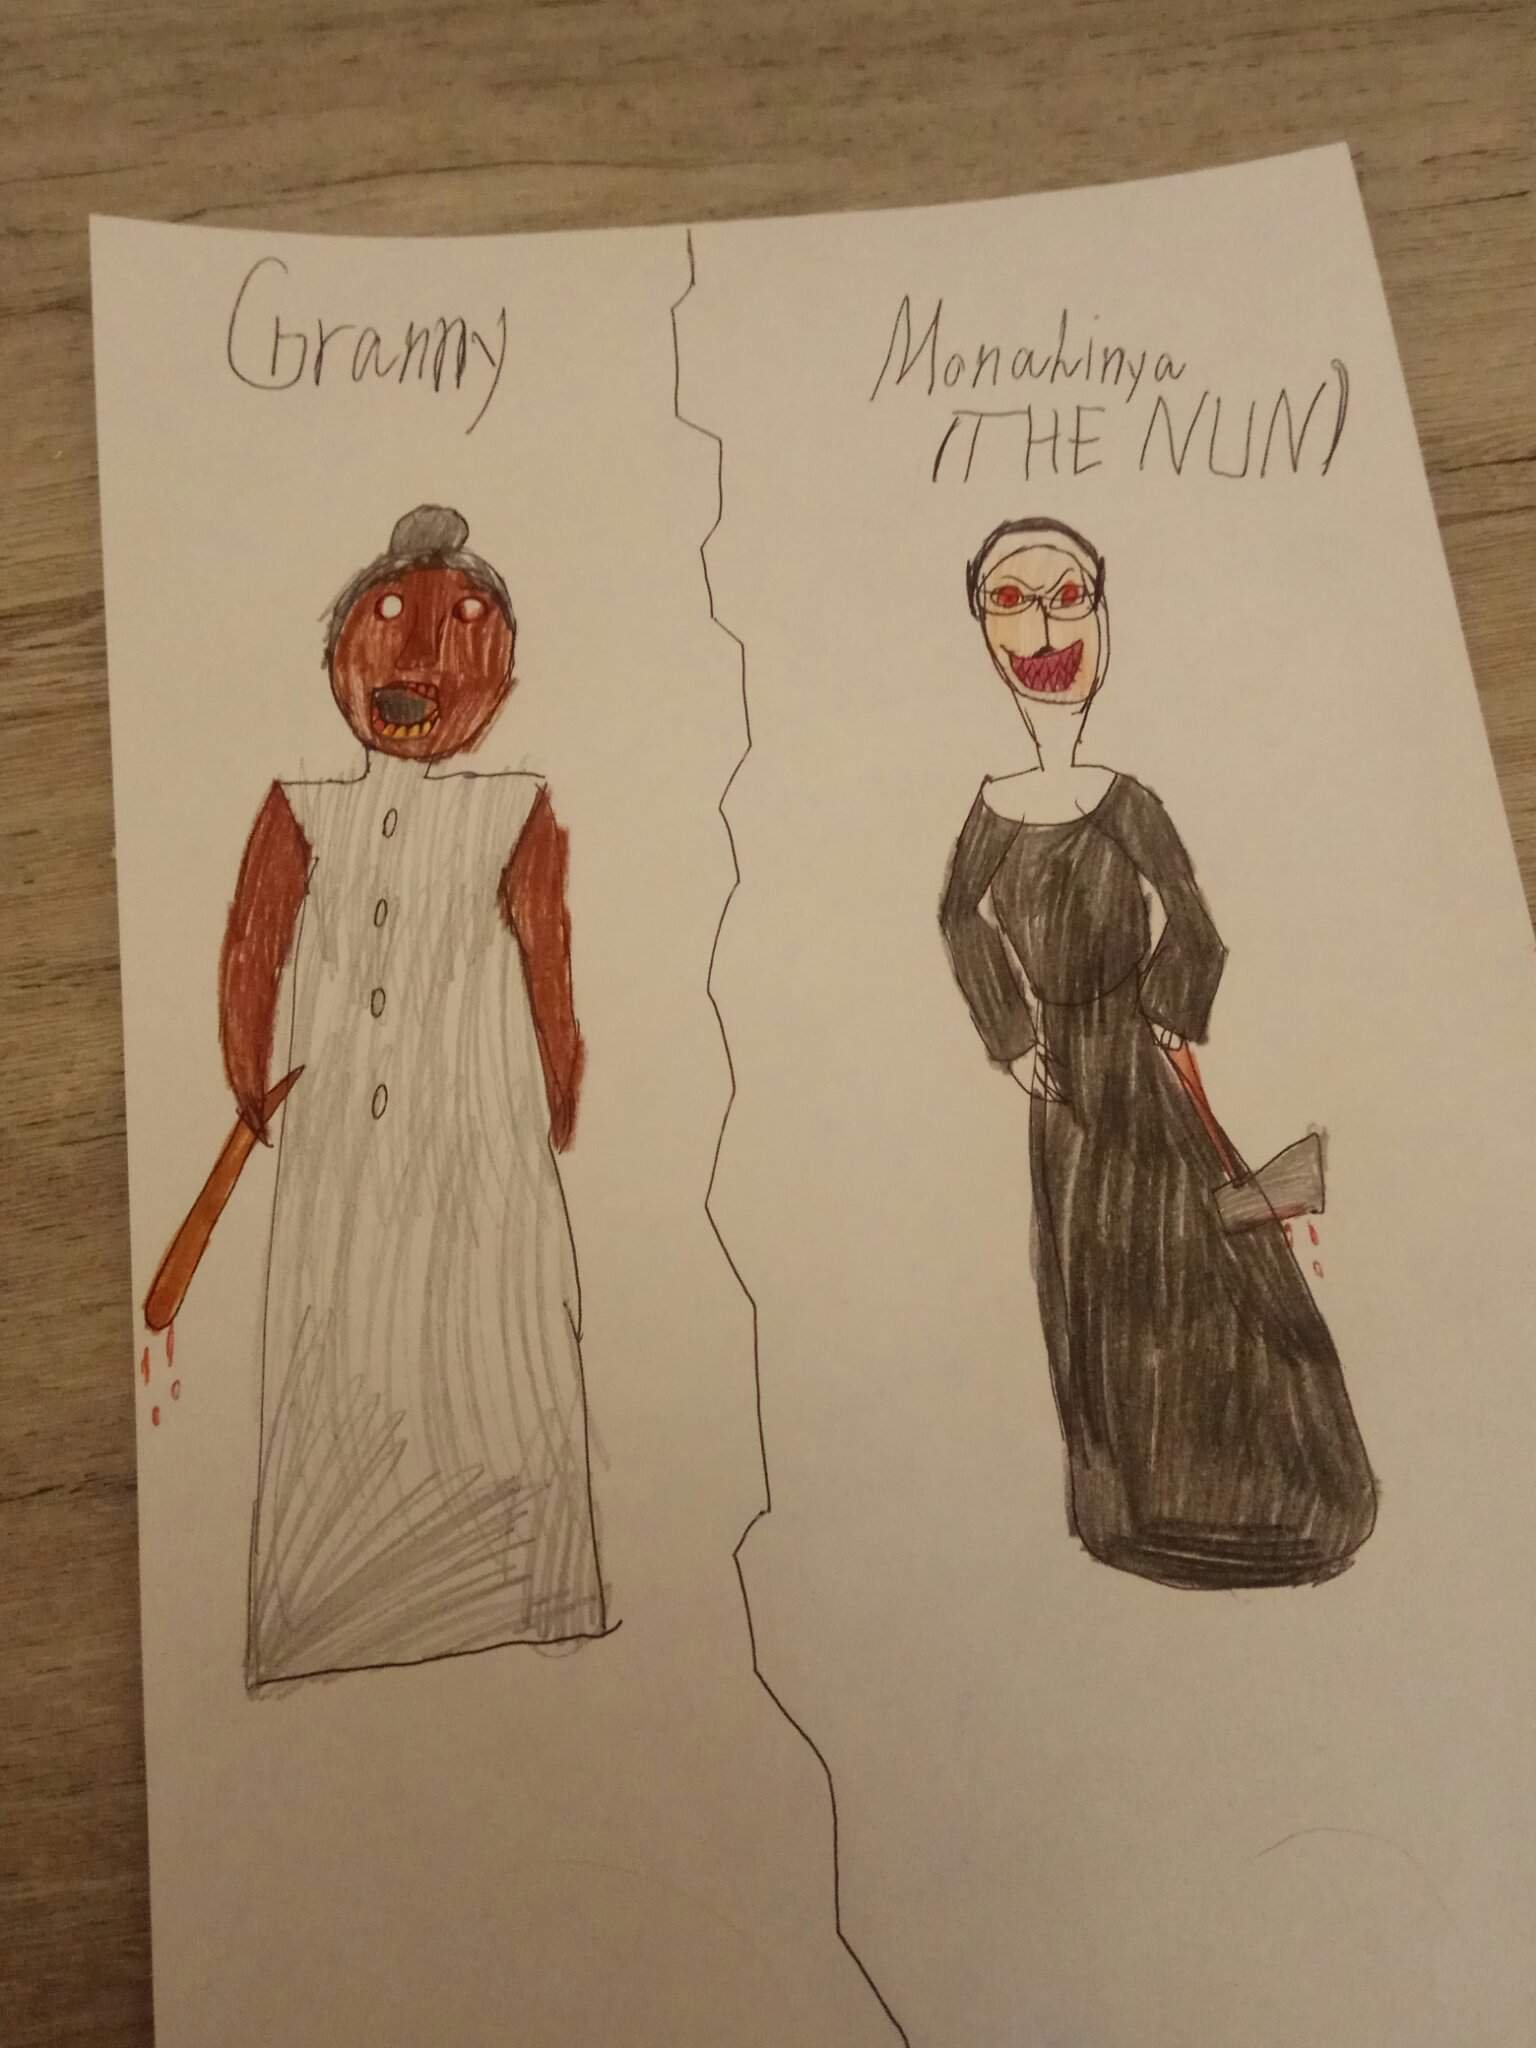 ГРЕННИ ГРЕННИ 2 монахиня